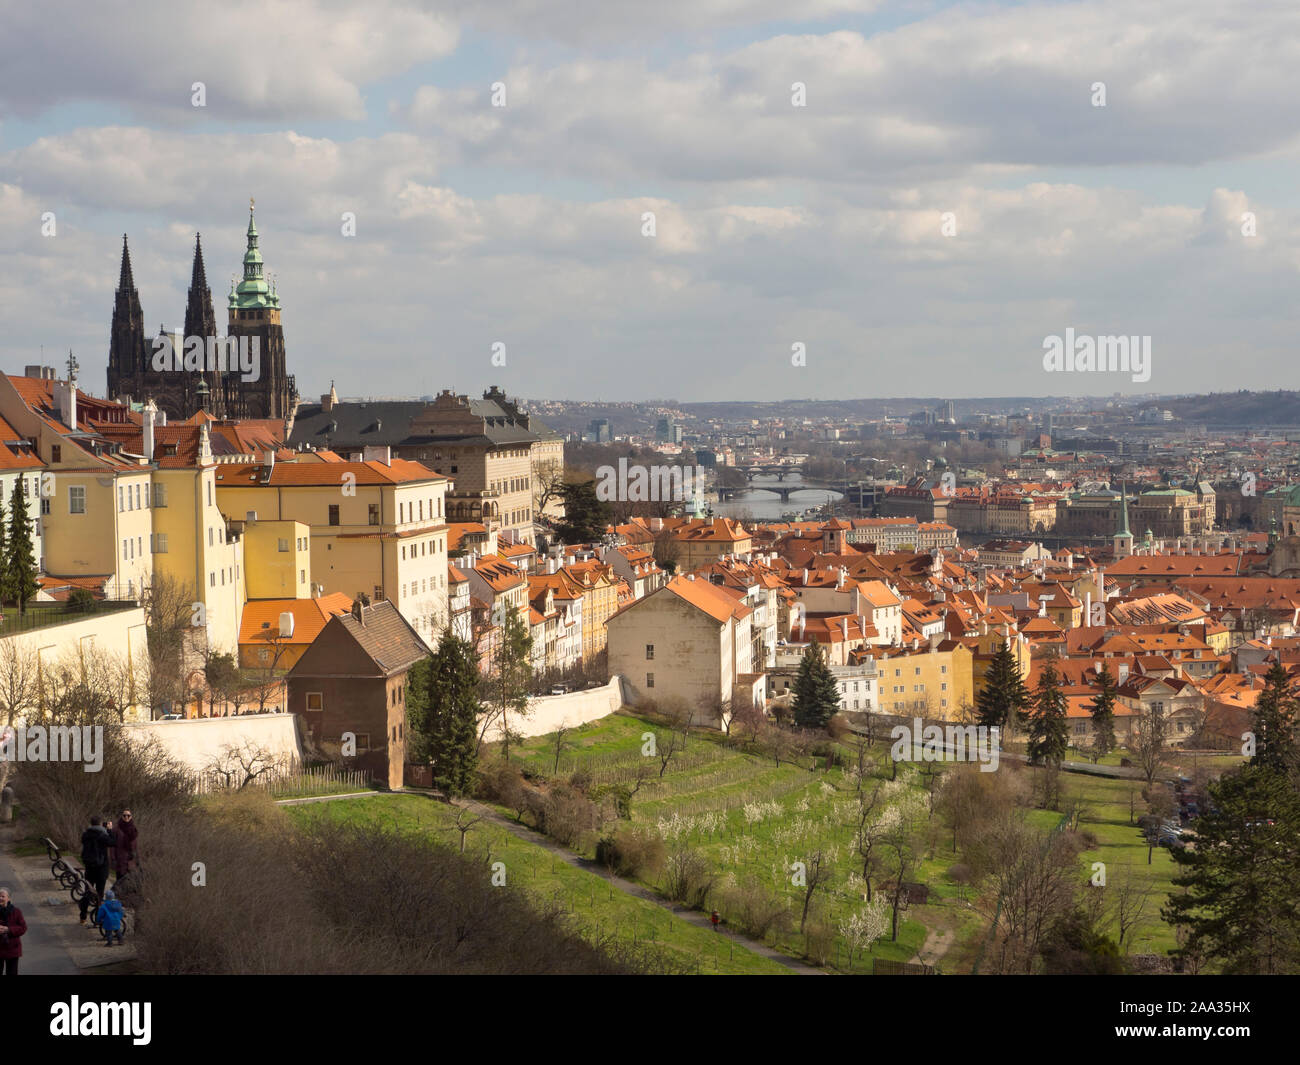 Vista panorámica de la ciudad de Praga, República Checa, situada en la ladera de una colina fuera del monasterio Strahov Foto de stock